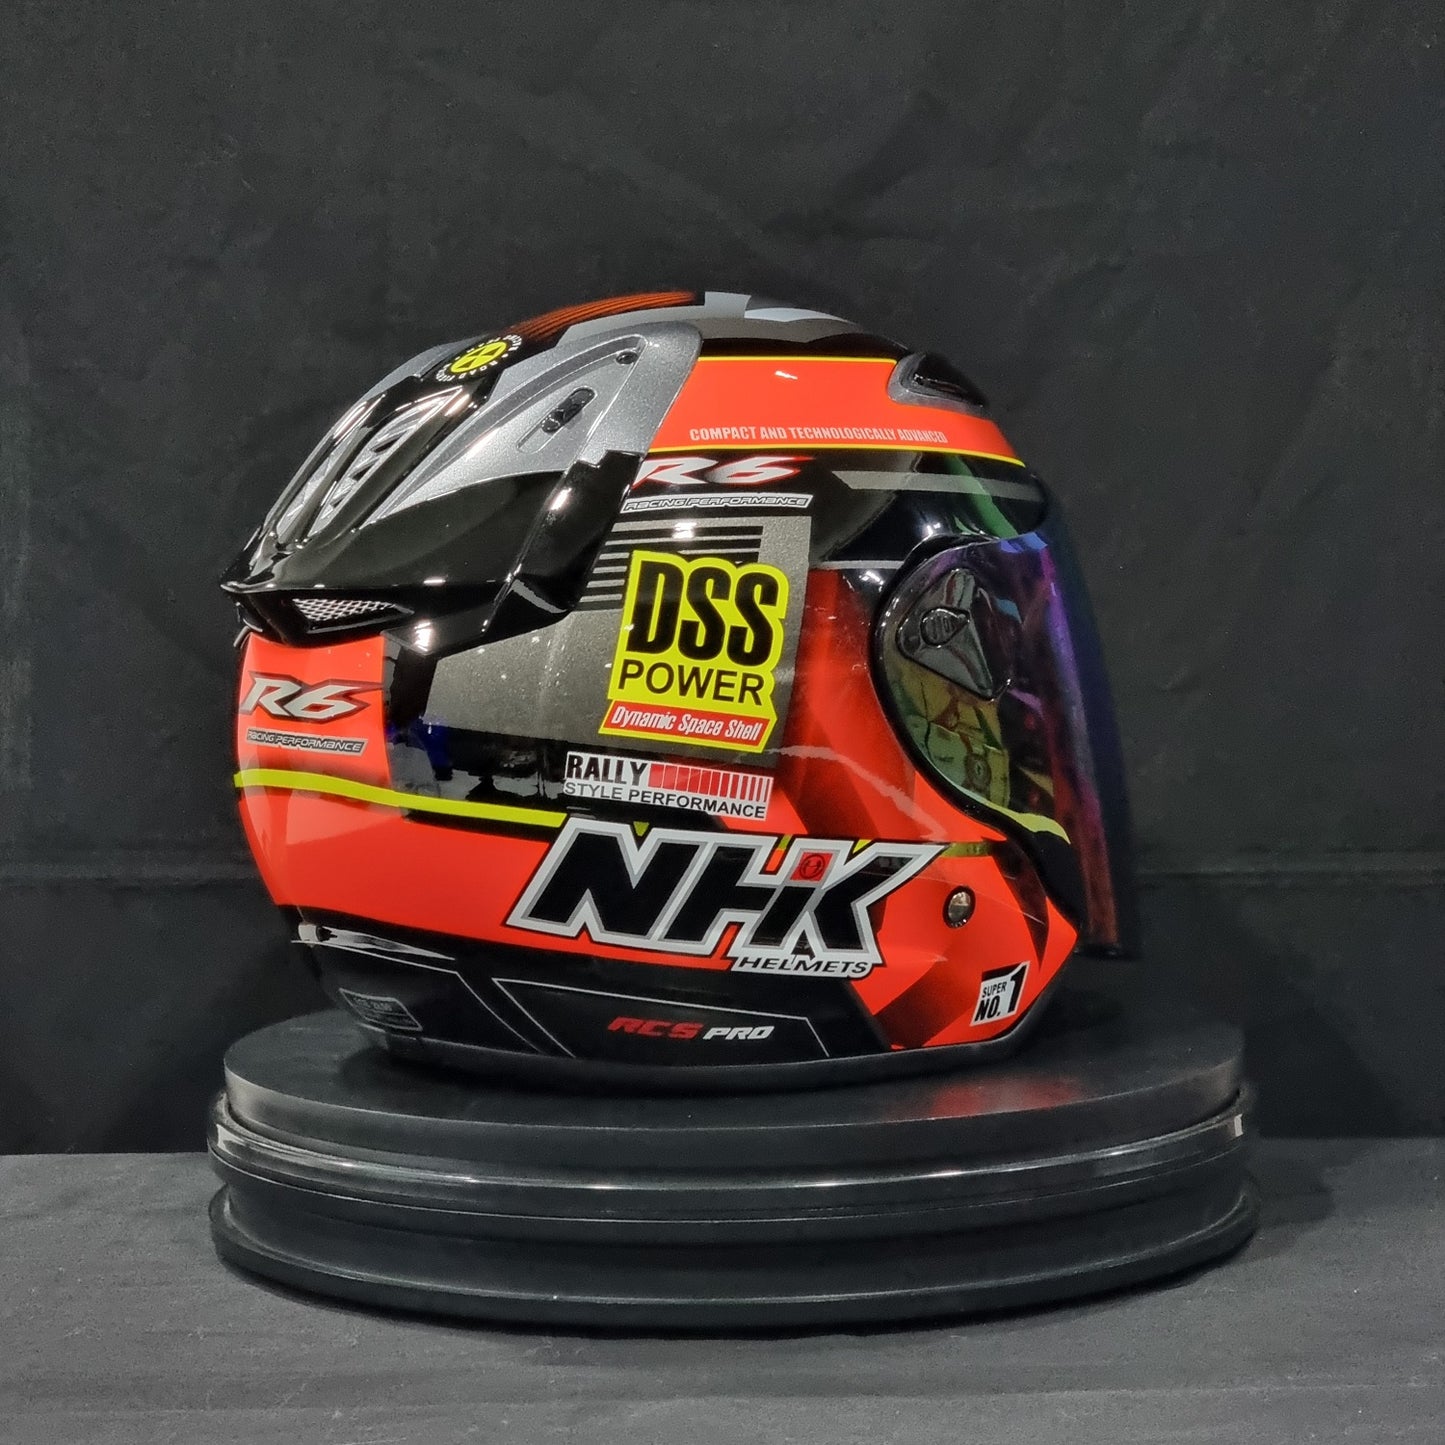 NHK Helmet R6 v2 Rally (Black/Orange Glossy)